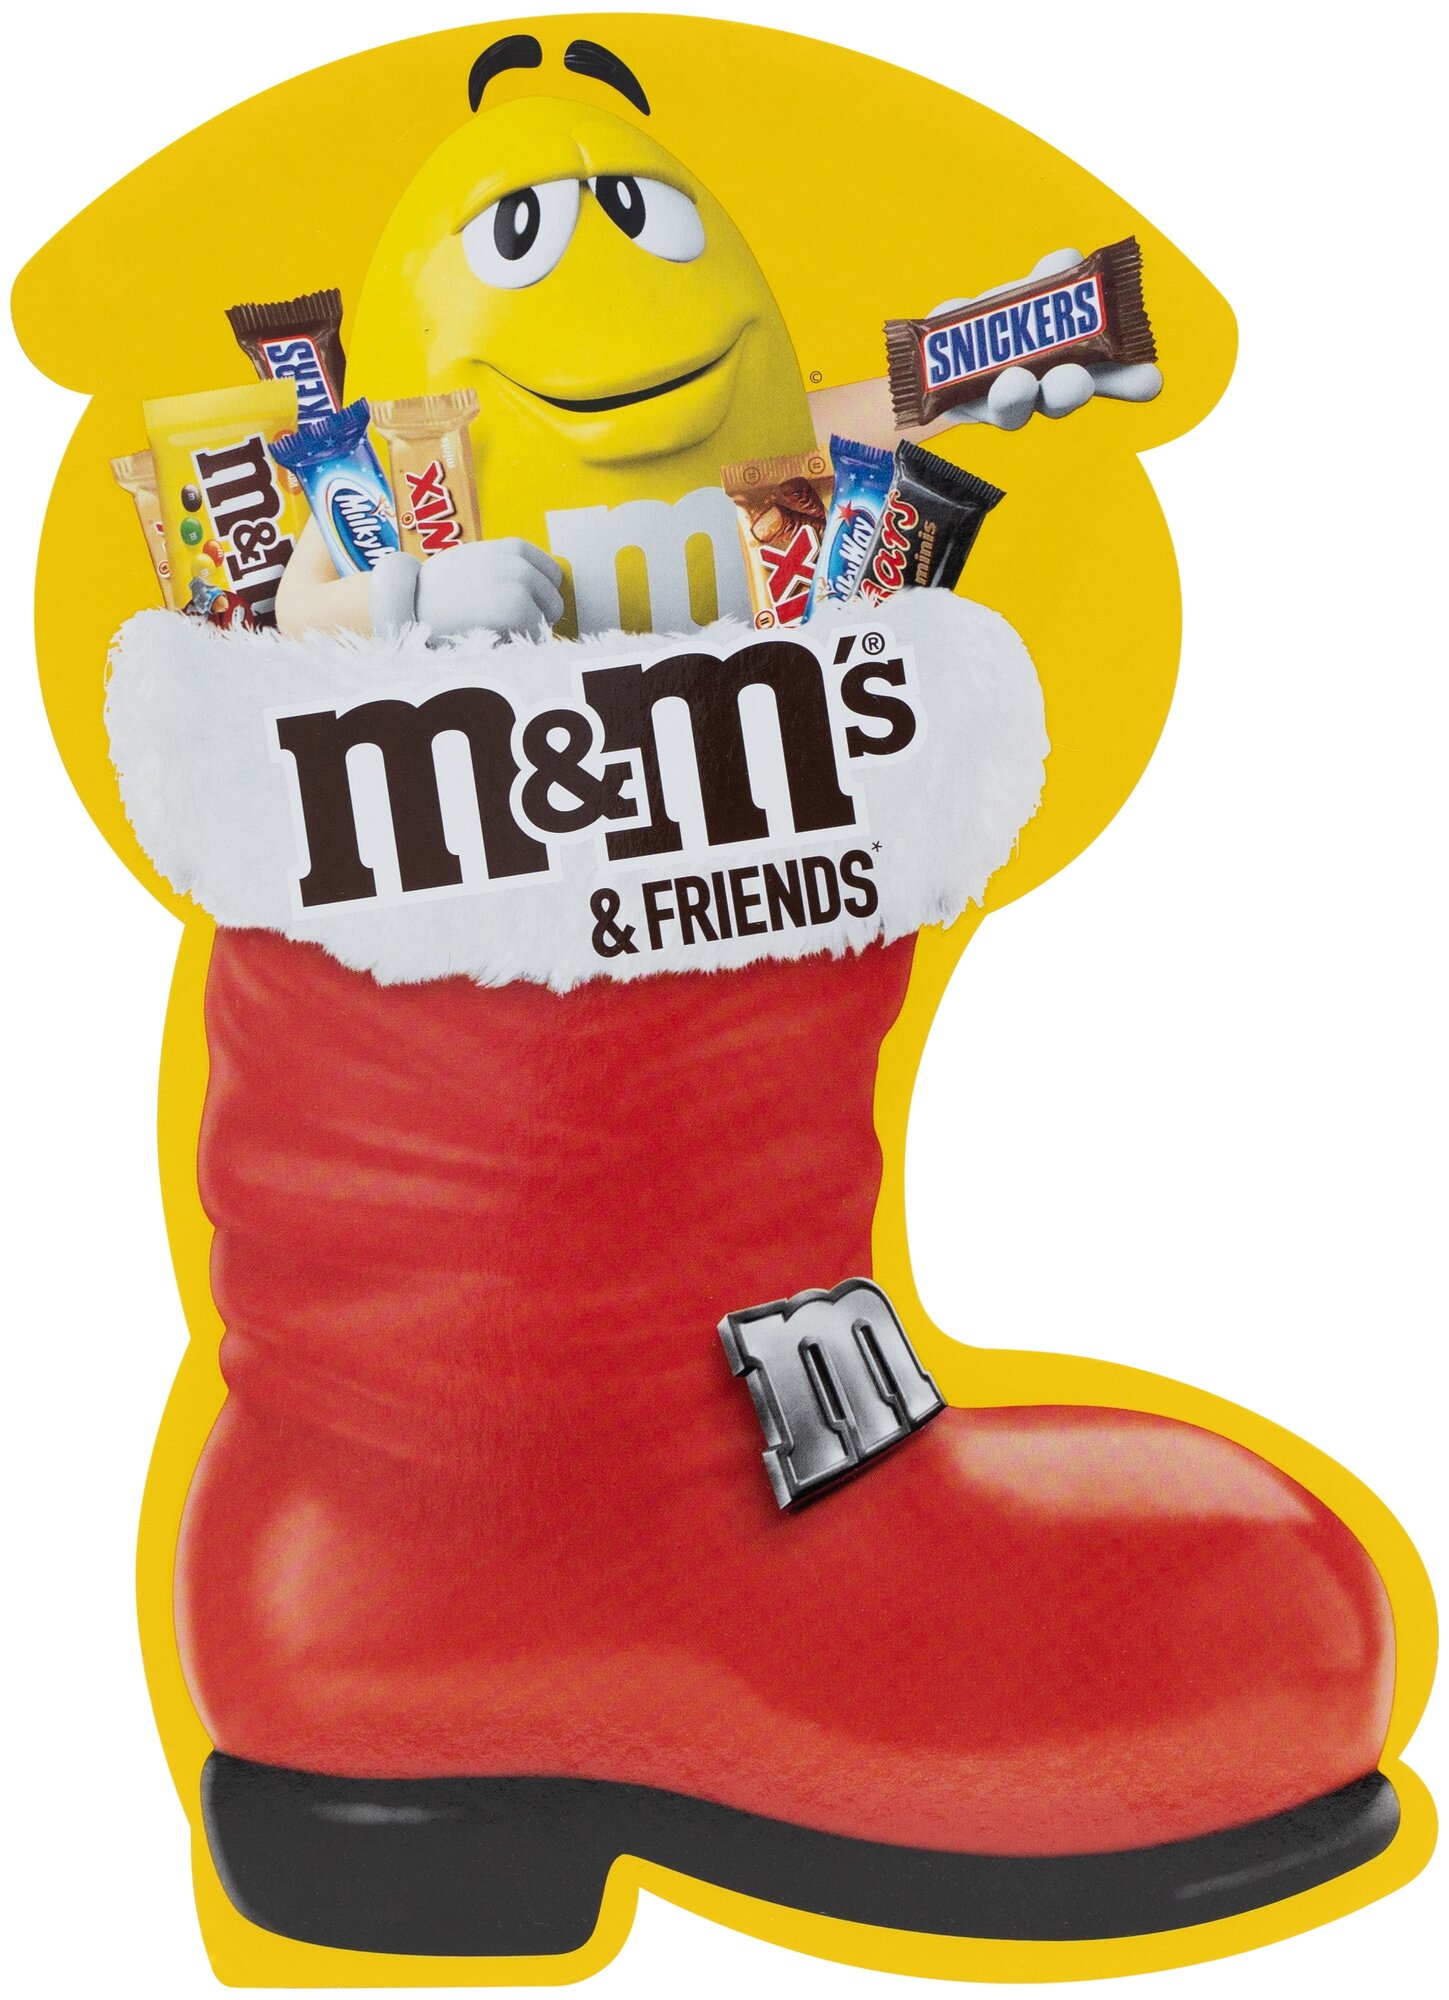 Большой сладкий подарочный набор M&M's and Friends Сапожок, 183г